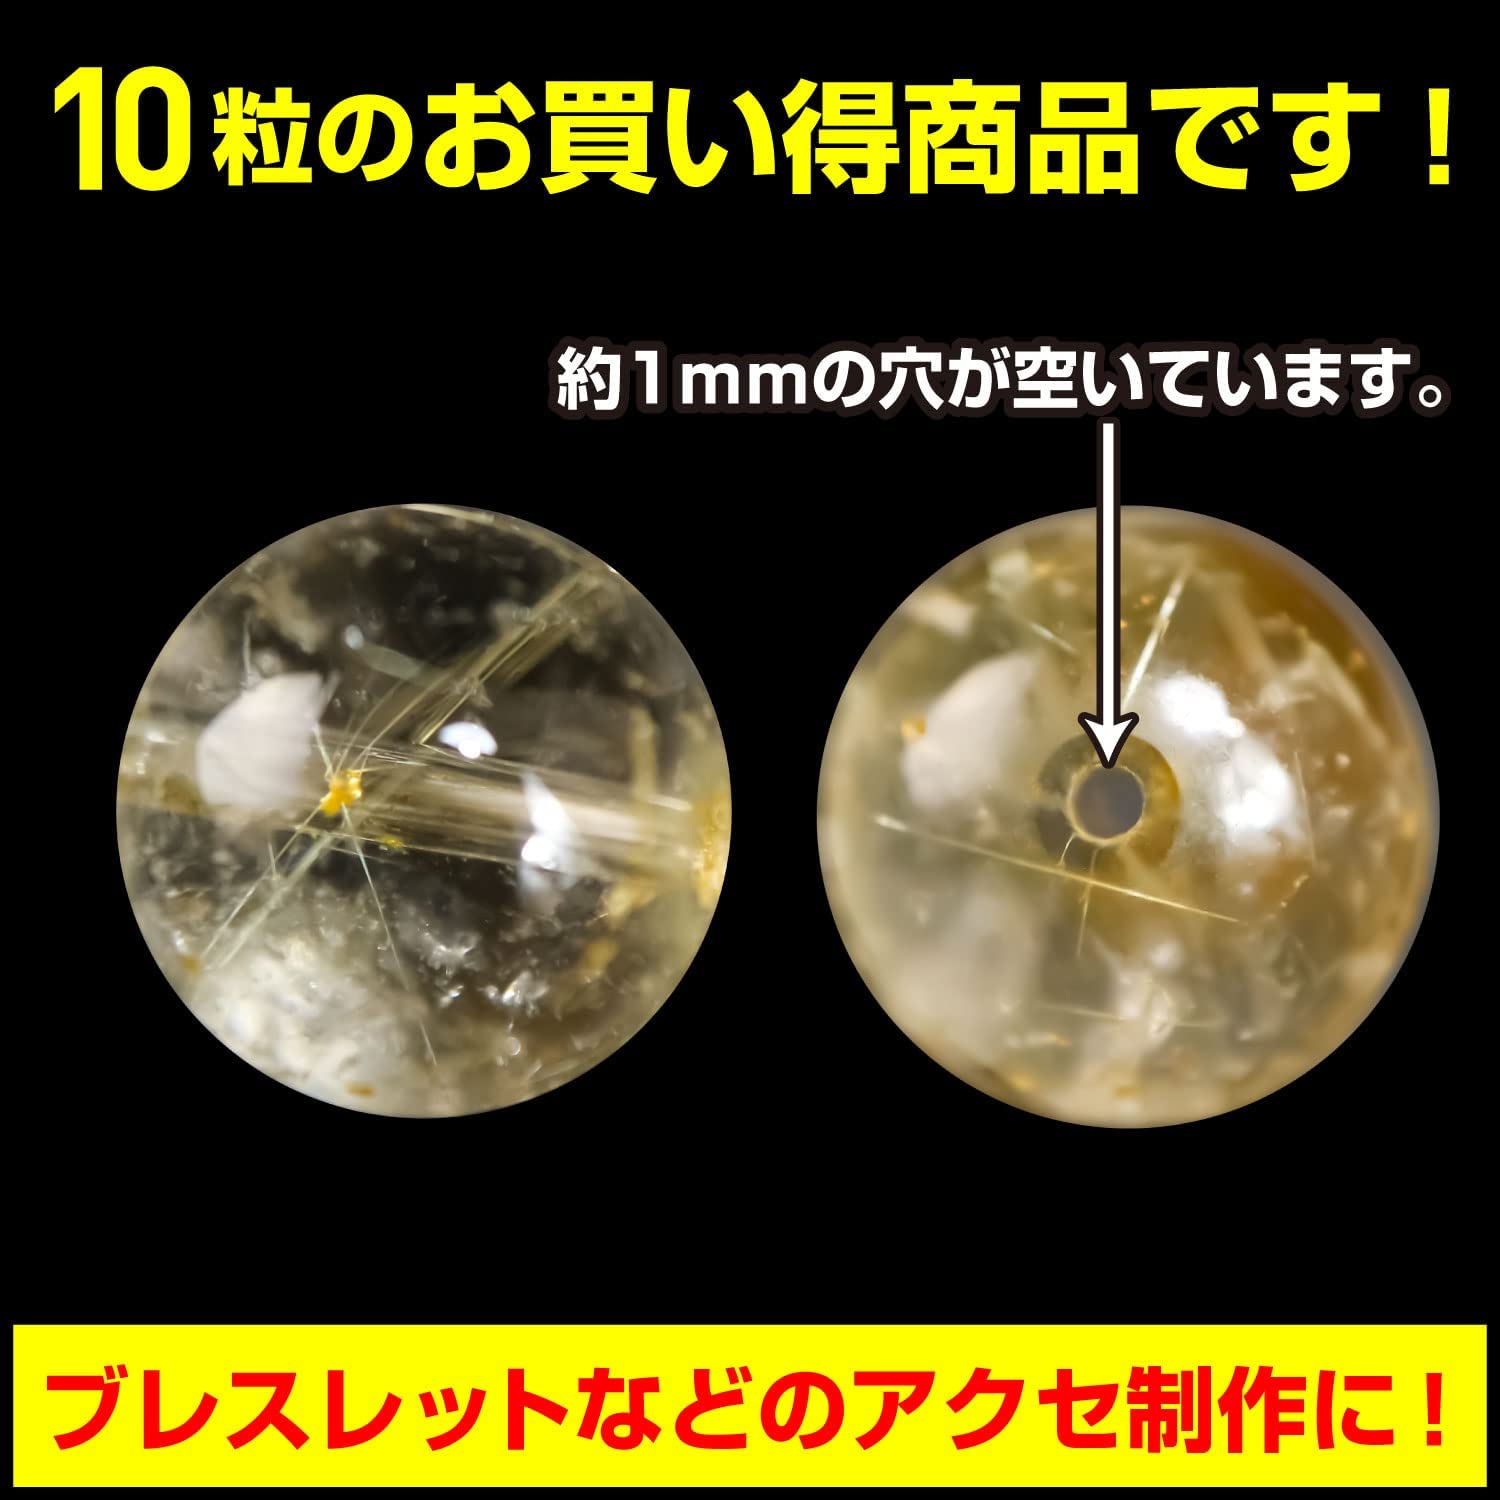 【天然石】ゴールドルチルクォーツ ブレスレット用 ビーズ 10mm10粒入りきらきらぷんぷん丸 NS-015